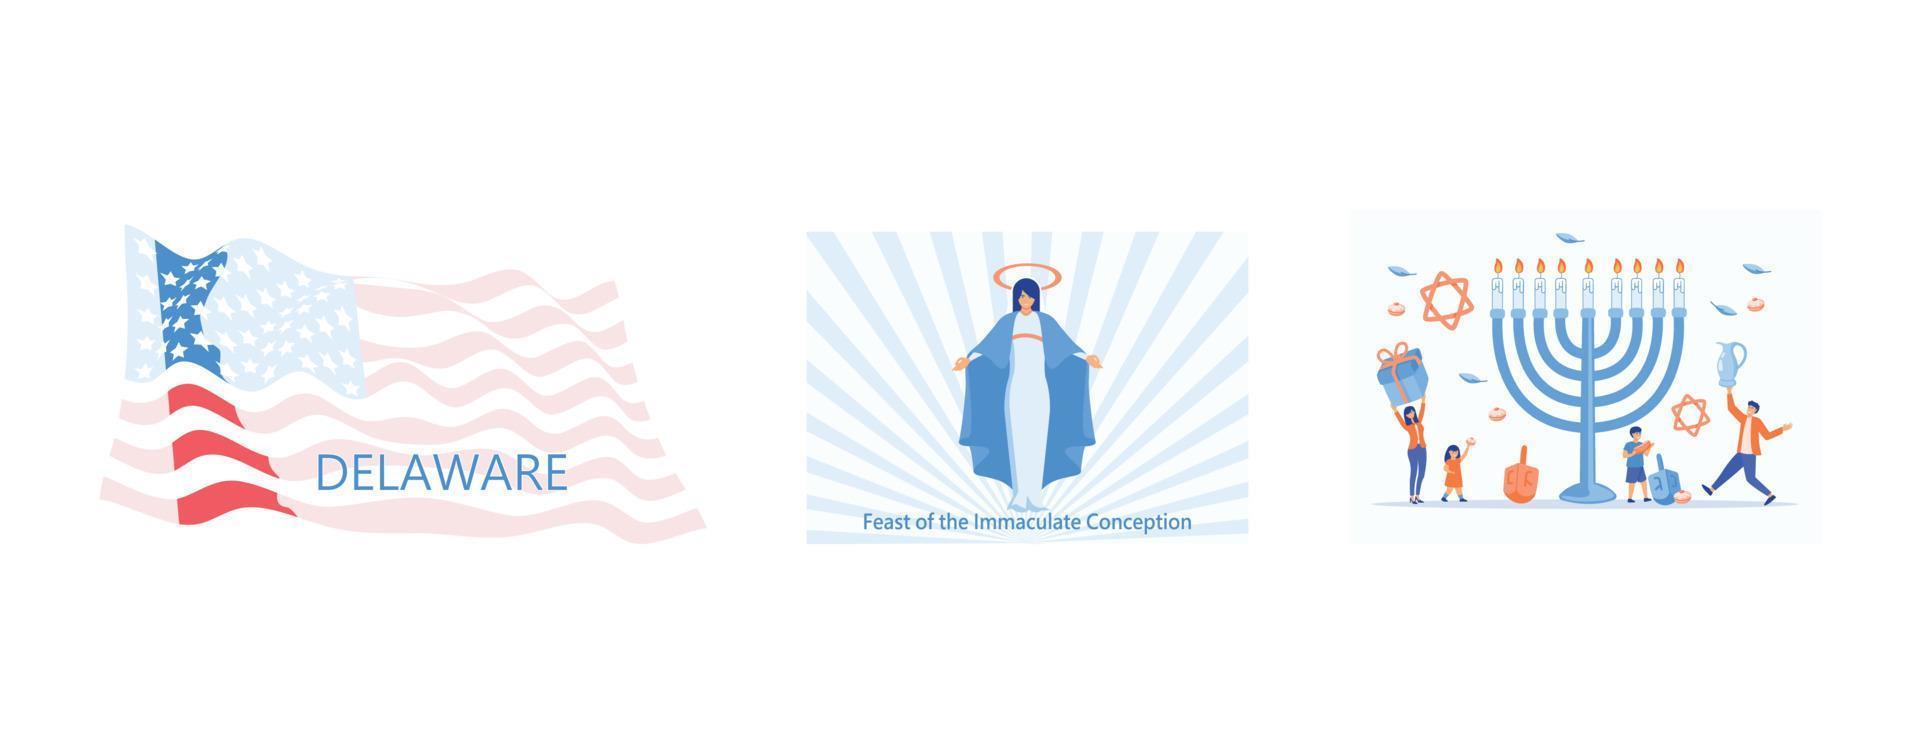 Form der Delaware-Staatskarte mit amerikanischer Flagge, Fest des Vektors der unbefleckten Empfängnis, glückliches Chanukka, gesetzte flache Vektor-moderne Illustration vektor